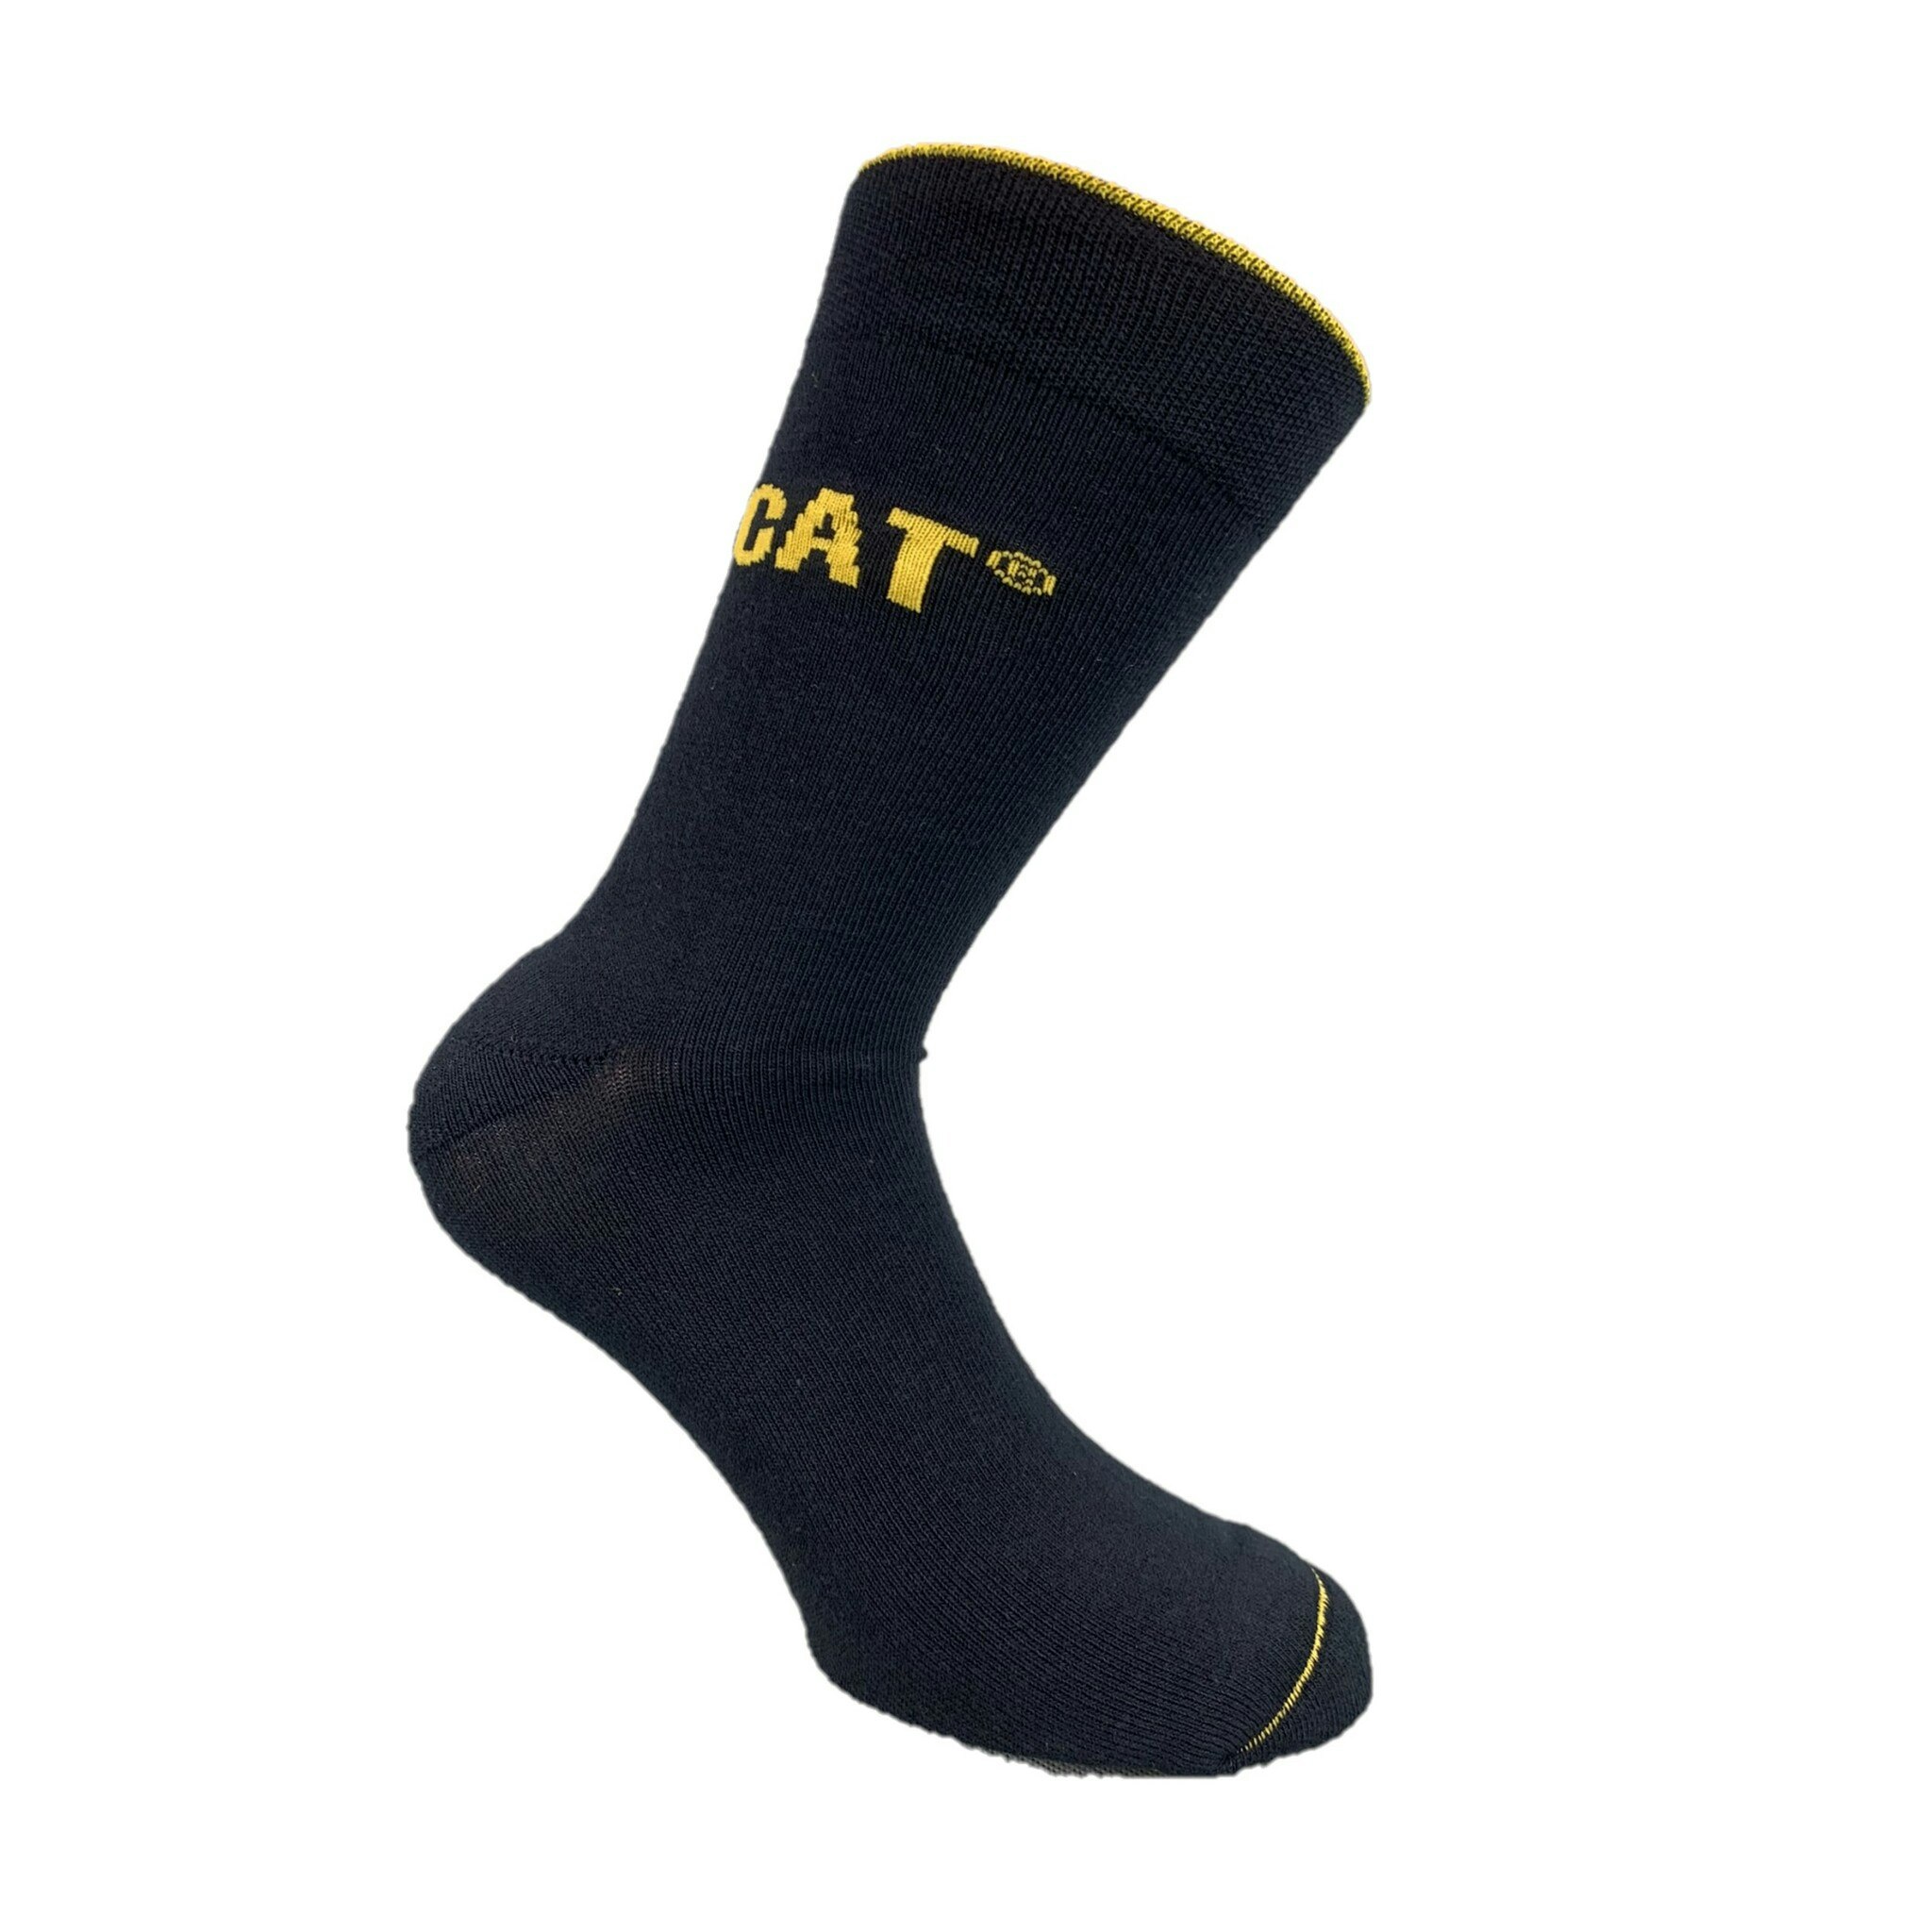 Caterpillar 3-pack Executive Work socks, 39-42, 43-46 black - Strumpor och  Kläder Online #outlet. Bra priser! Factorystore.se